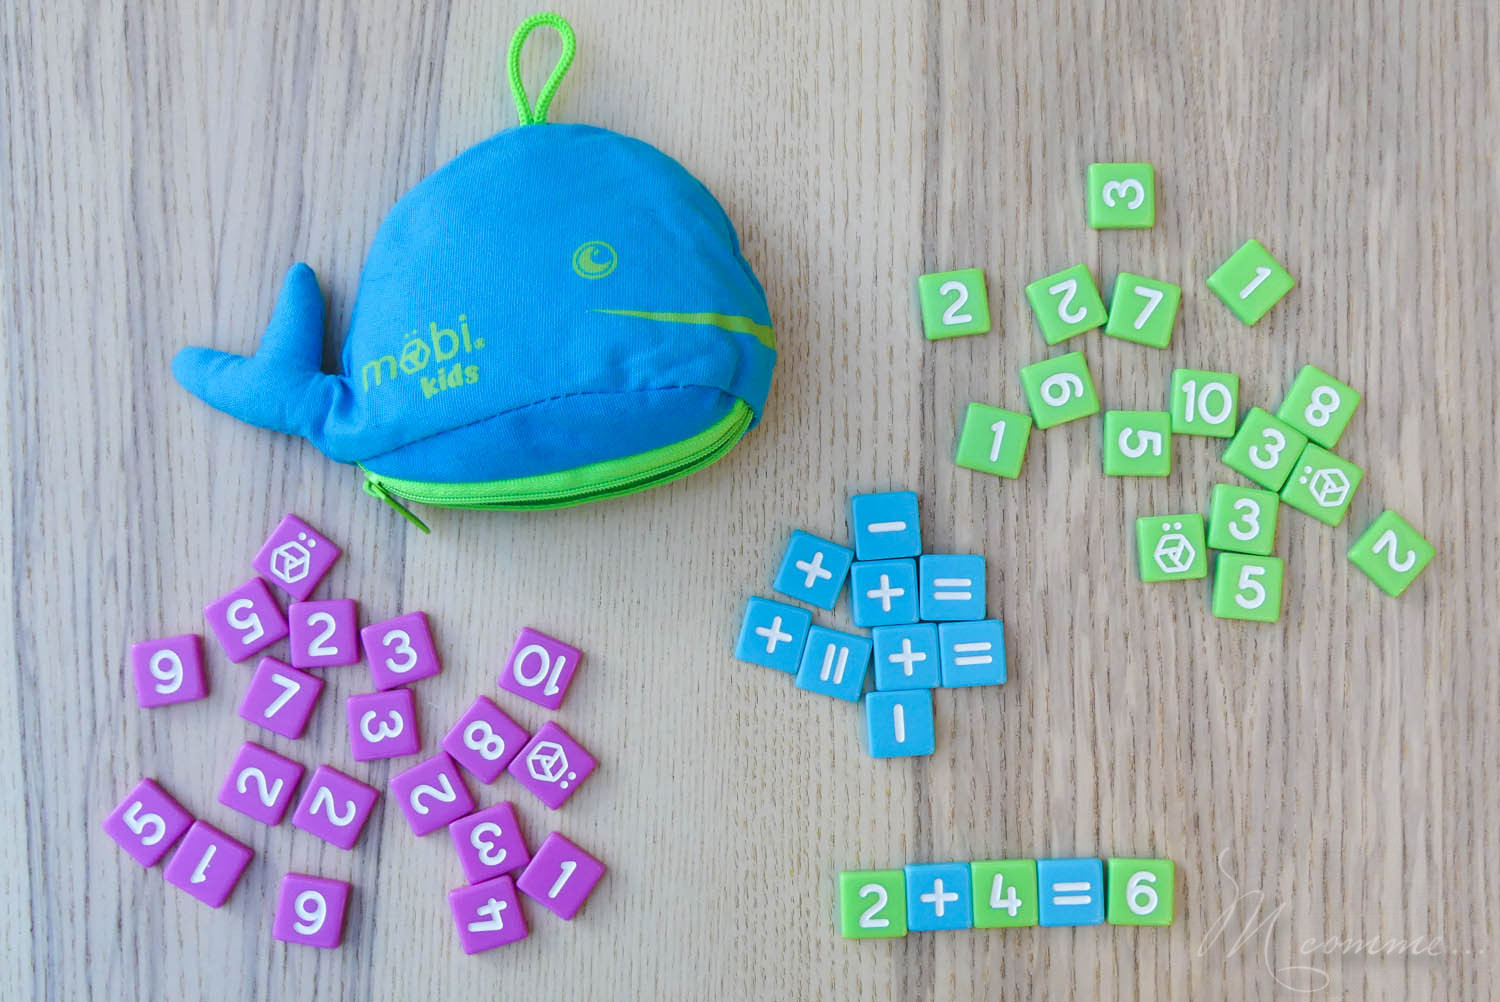 Mobi jeu pour apprendre les mathématiques aux enfants